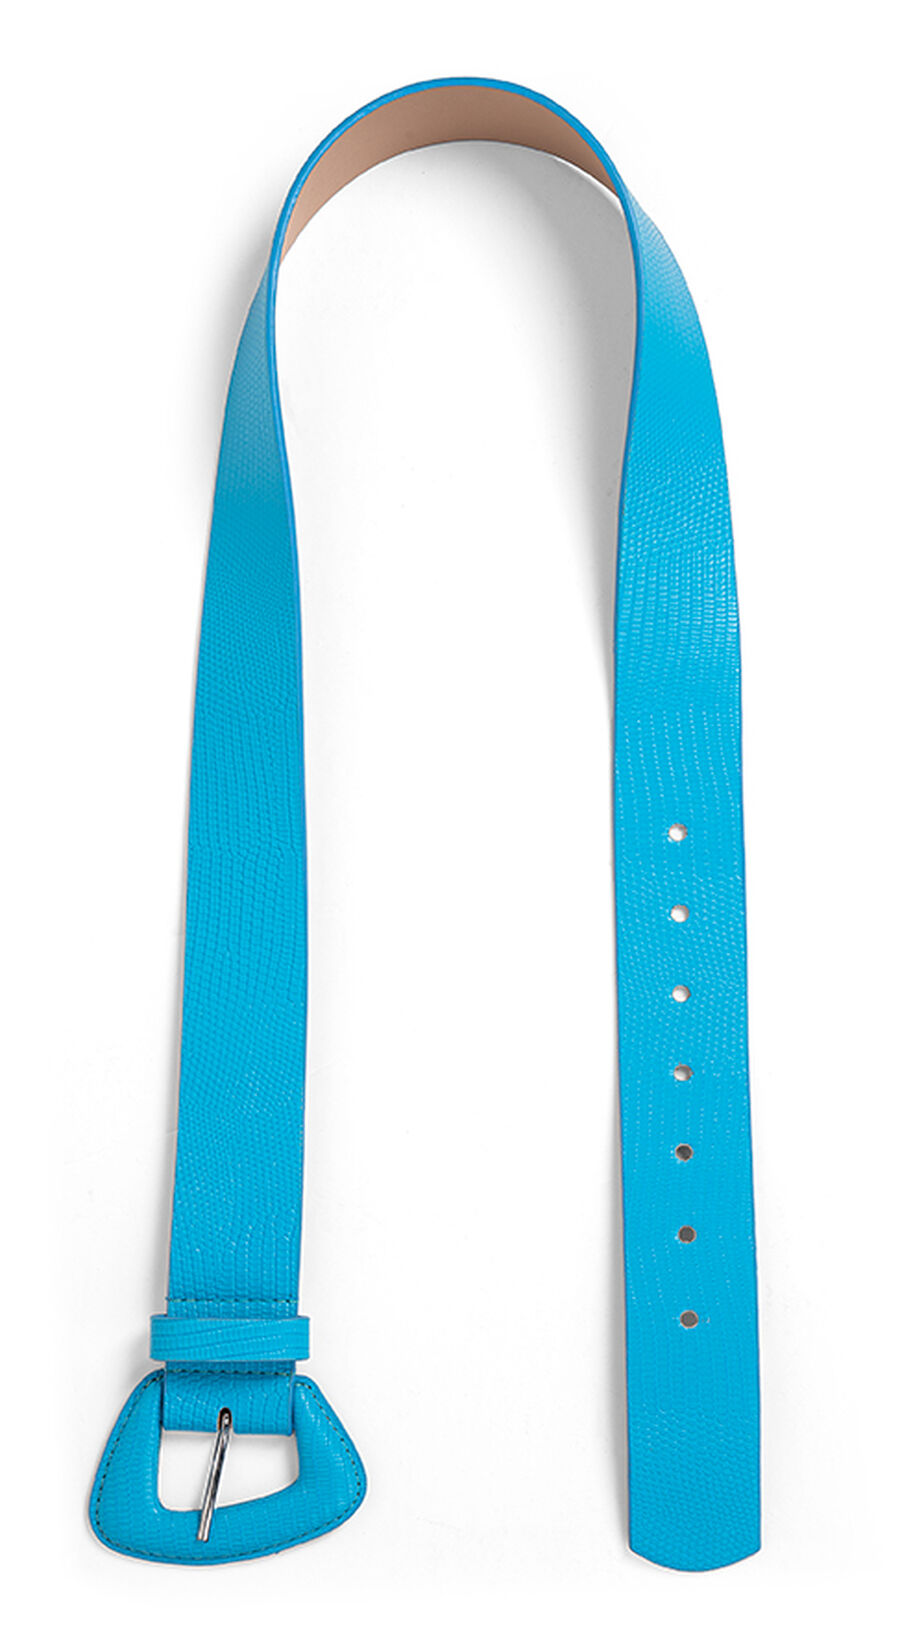 Cinto de Cintura com Fivela Assimétrica, , large.